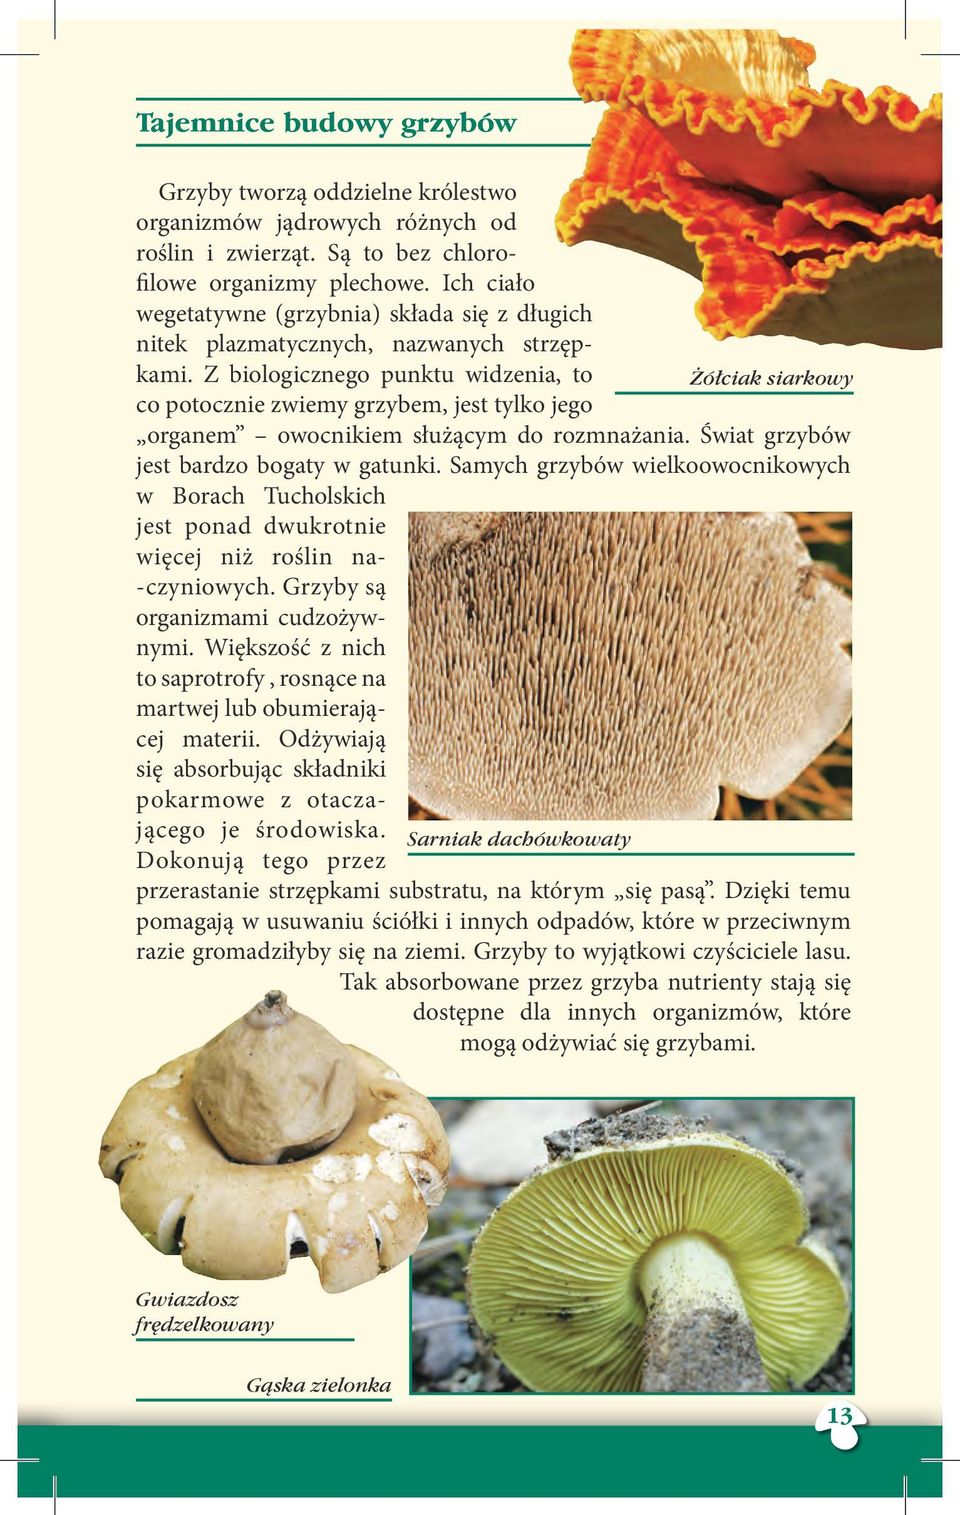 Z biologicznego punktu widzenia, to co potocznie zwiemy grzybem, jest tylko jego organem owocnikiem służącym do rozmnażania. Świat grzybów jest bardzo bogaty w gatunki.